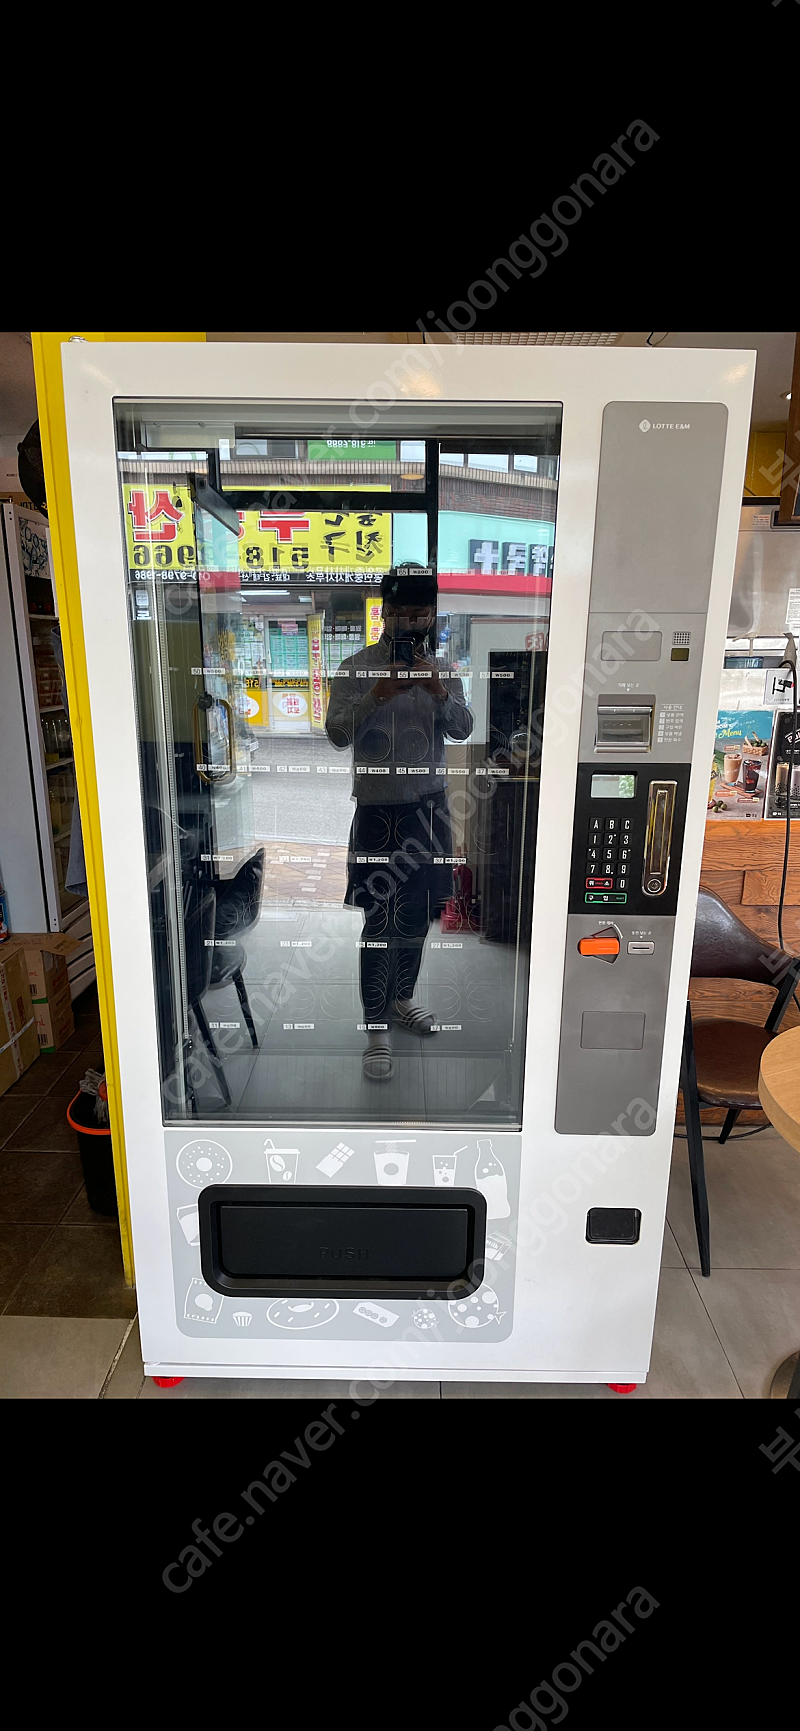 상품명 : 완료 멀티 자판기 롯데기공lvm-482